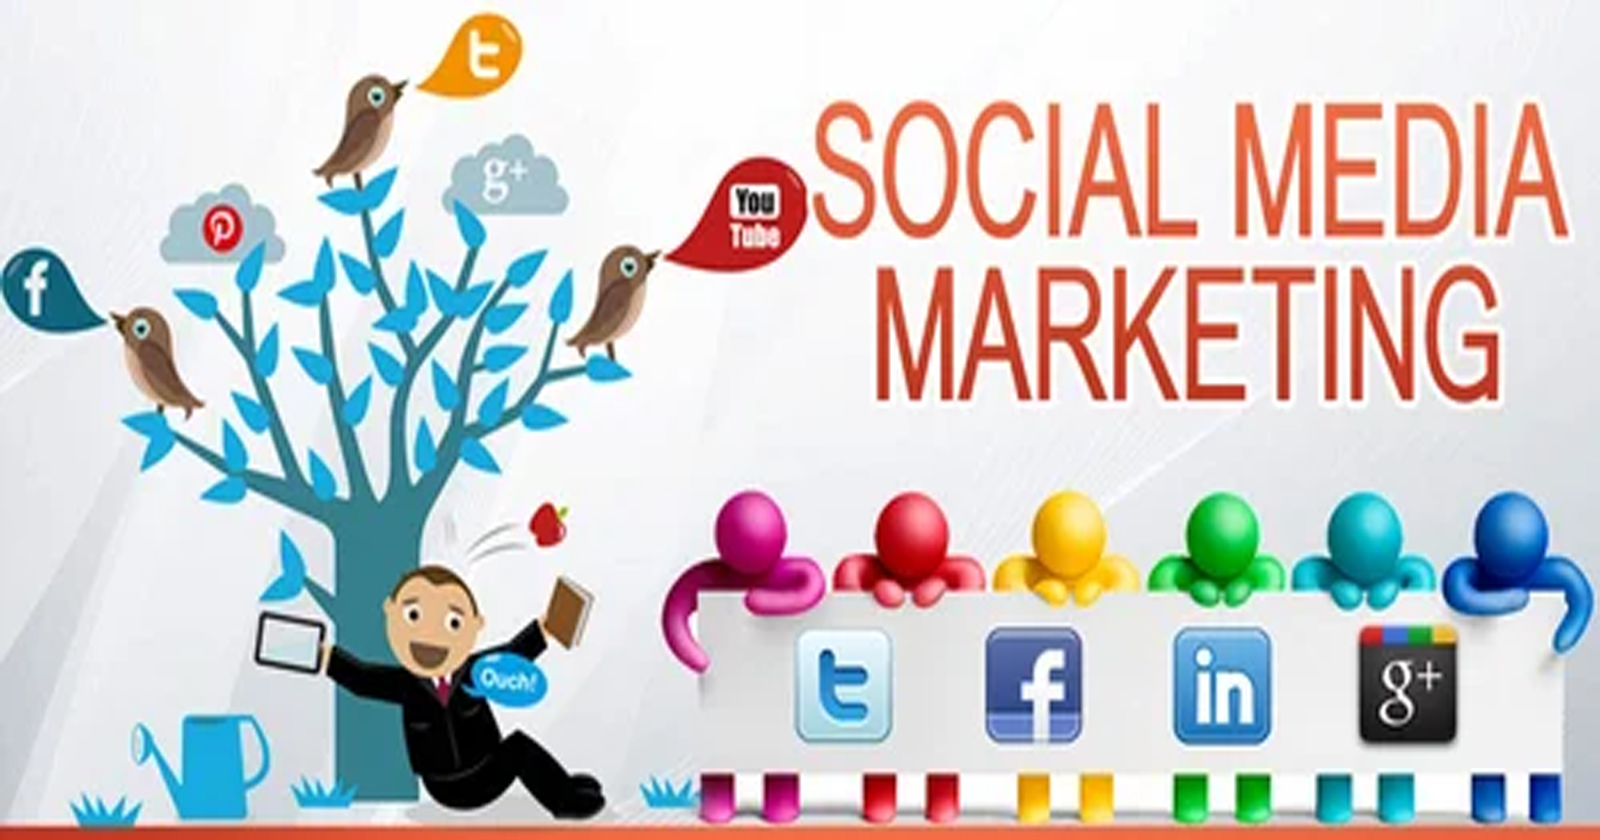 Quảng cáo xã hội là hình thức quảng cáo trên các nền tảng mạng xã hội như Facebook, Instagram, Twitter, LinkedIn, và nhiều nền tảng khác. Đây là một phần quan trọng trong chiến lược marketing hiện đại